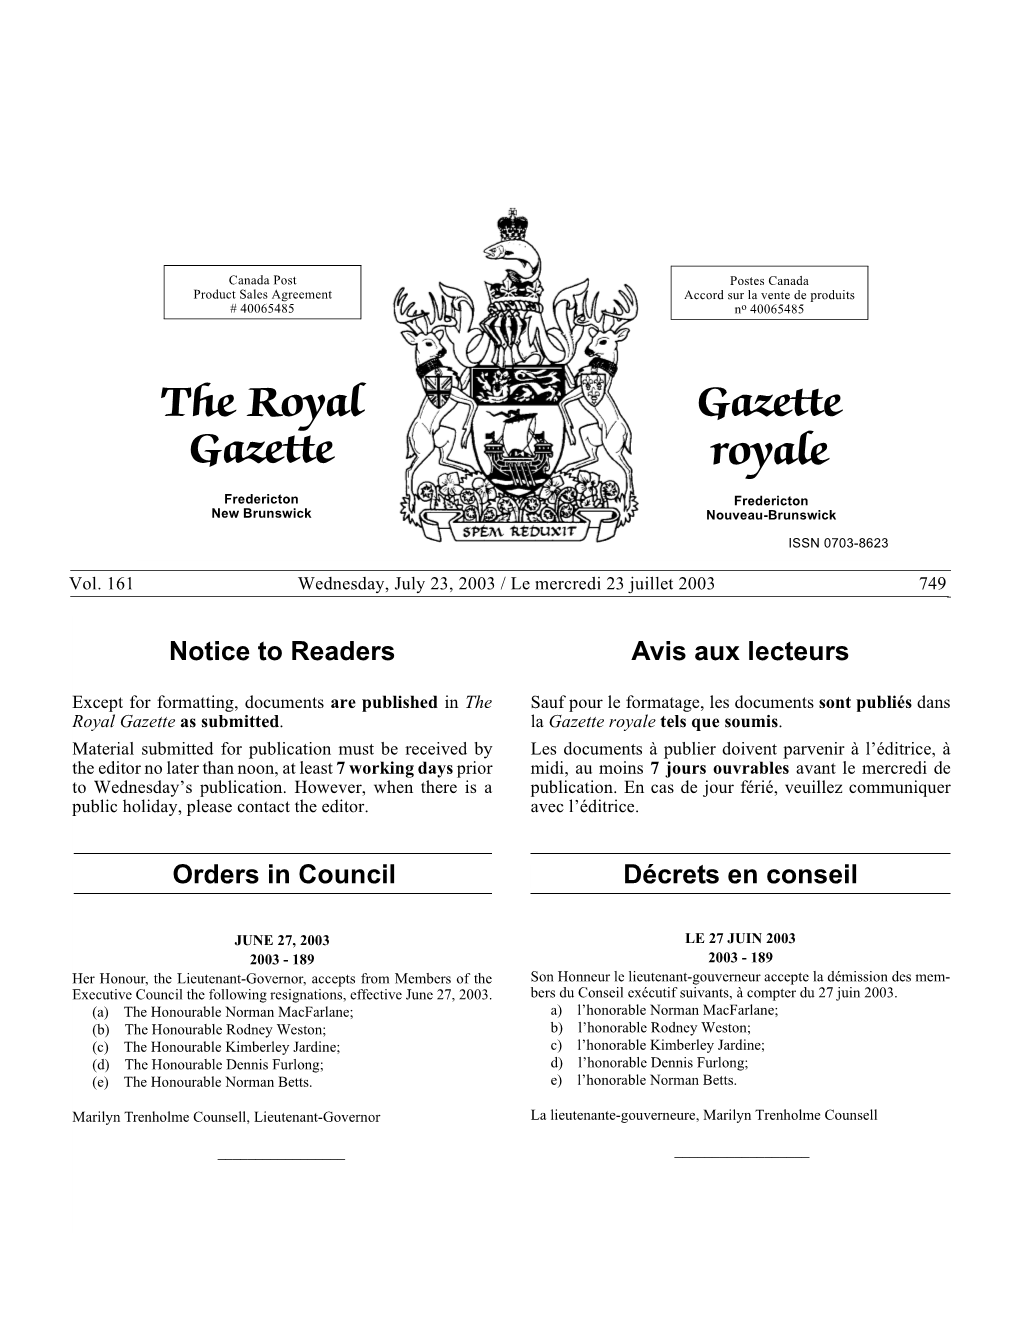 The Royal Gazette Gazette Royale